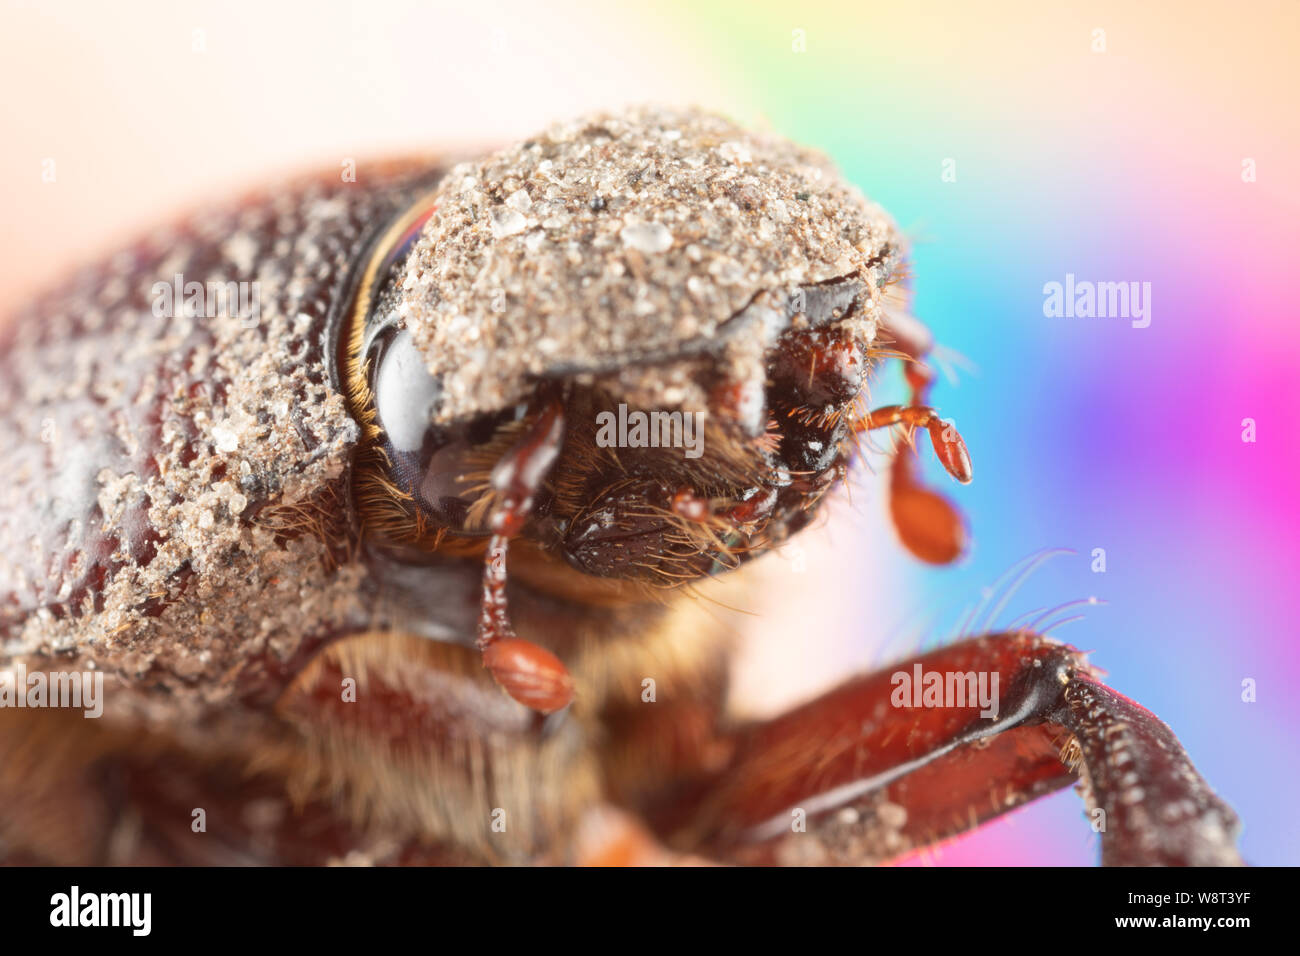 Macro Fotografía de un lindo escarabajo de junio con barro sobre su cabeza y cuerpo, grandes ojos, adorable pequeño error inocente Foto de stock